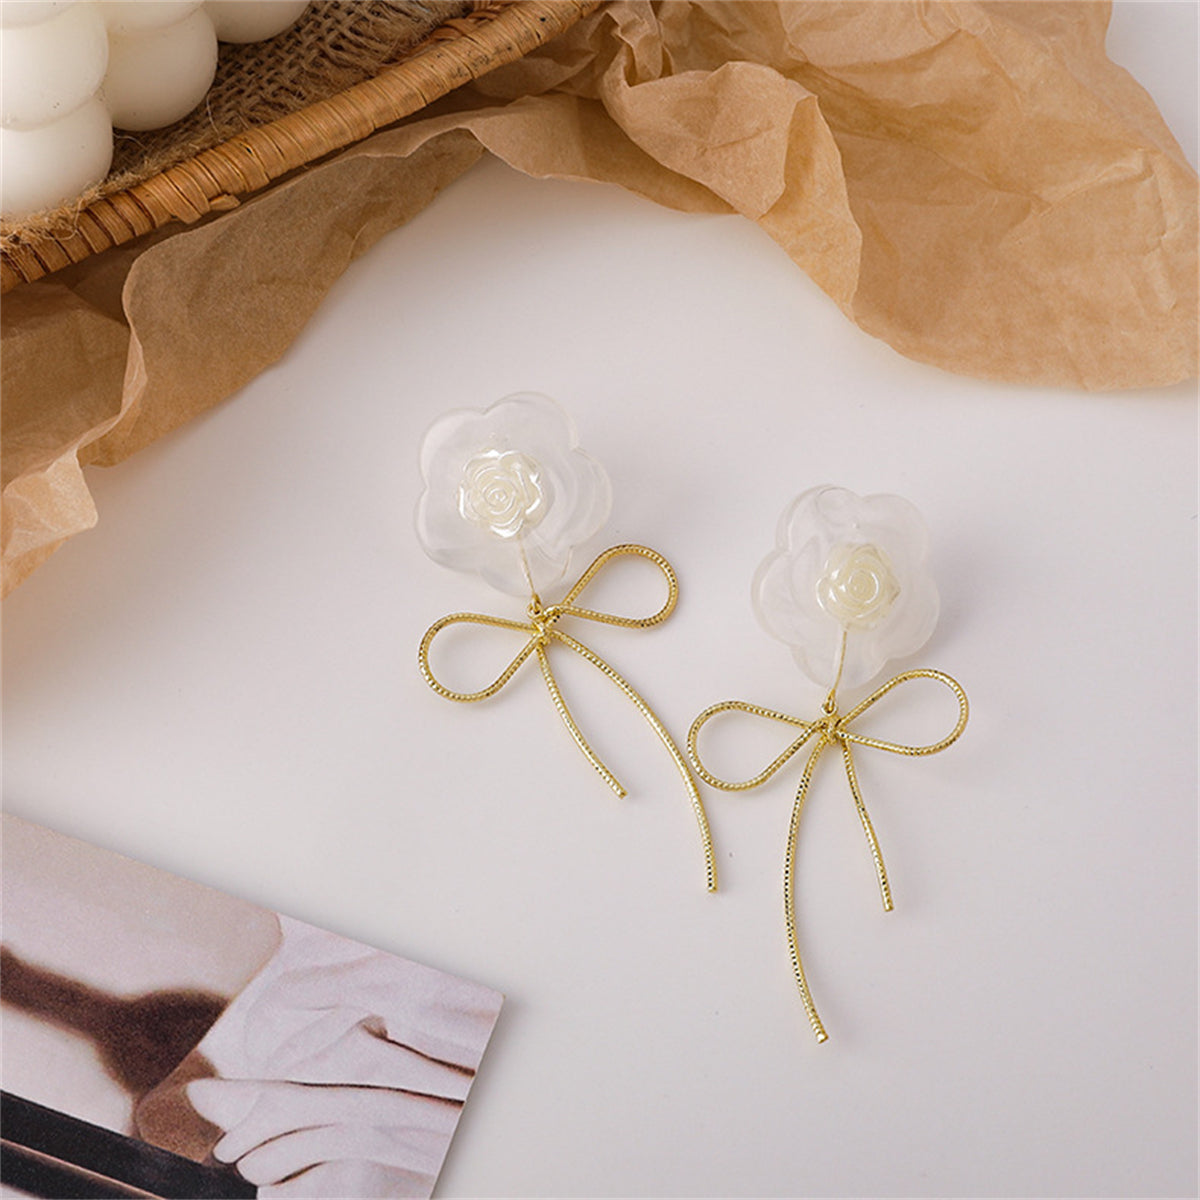 White Resin & 18K Gold-Plated Flower Bow Drop Earrings